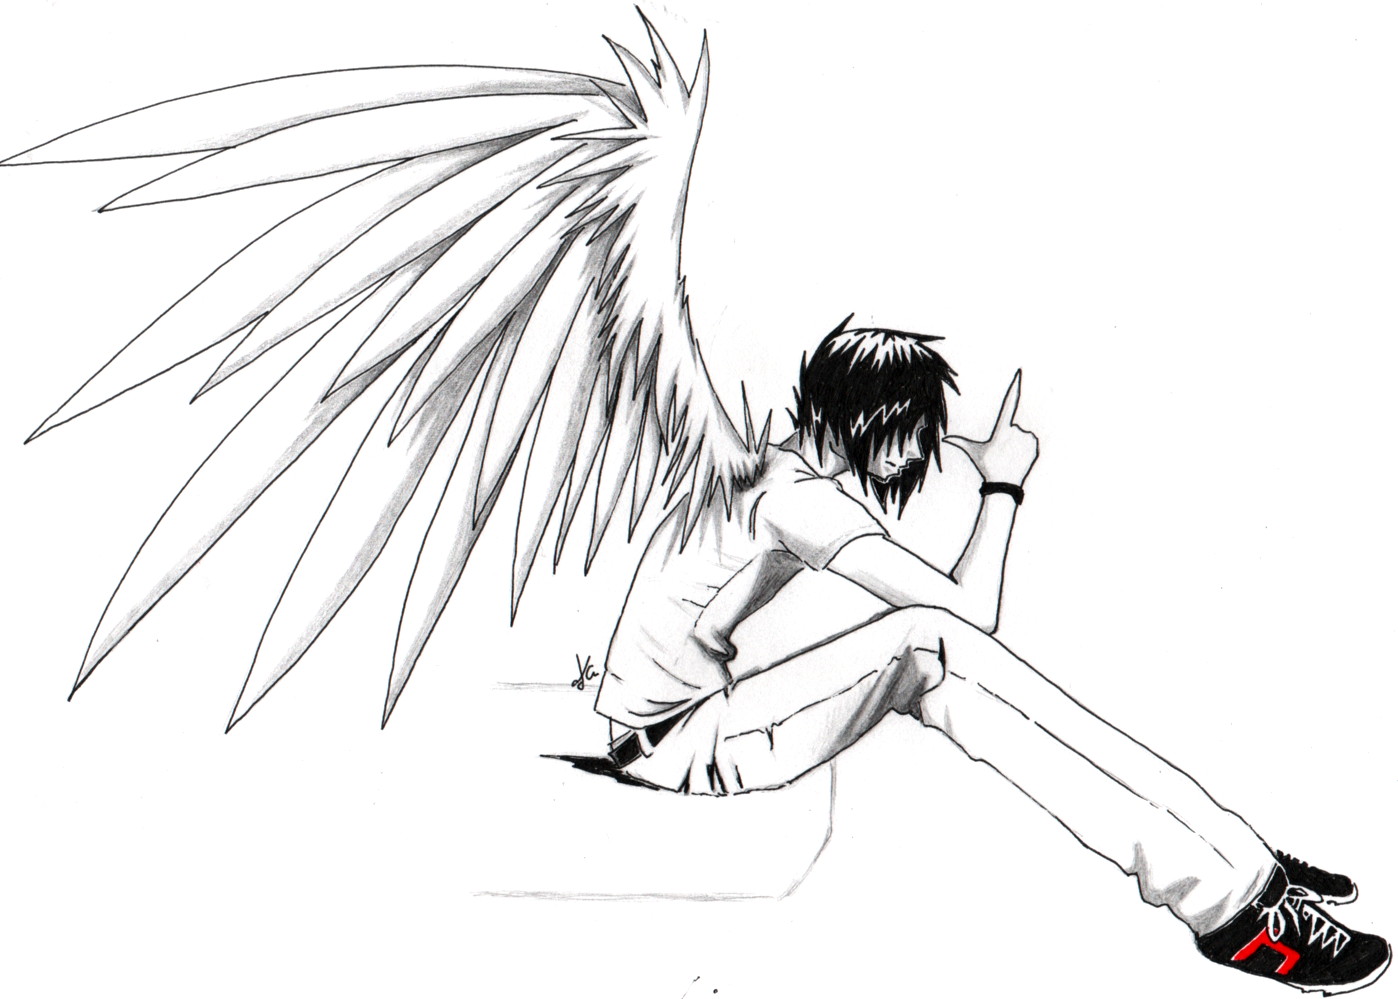 ulgobang: Emo anime angel boy